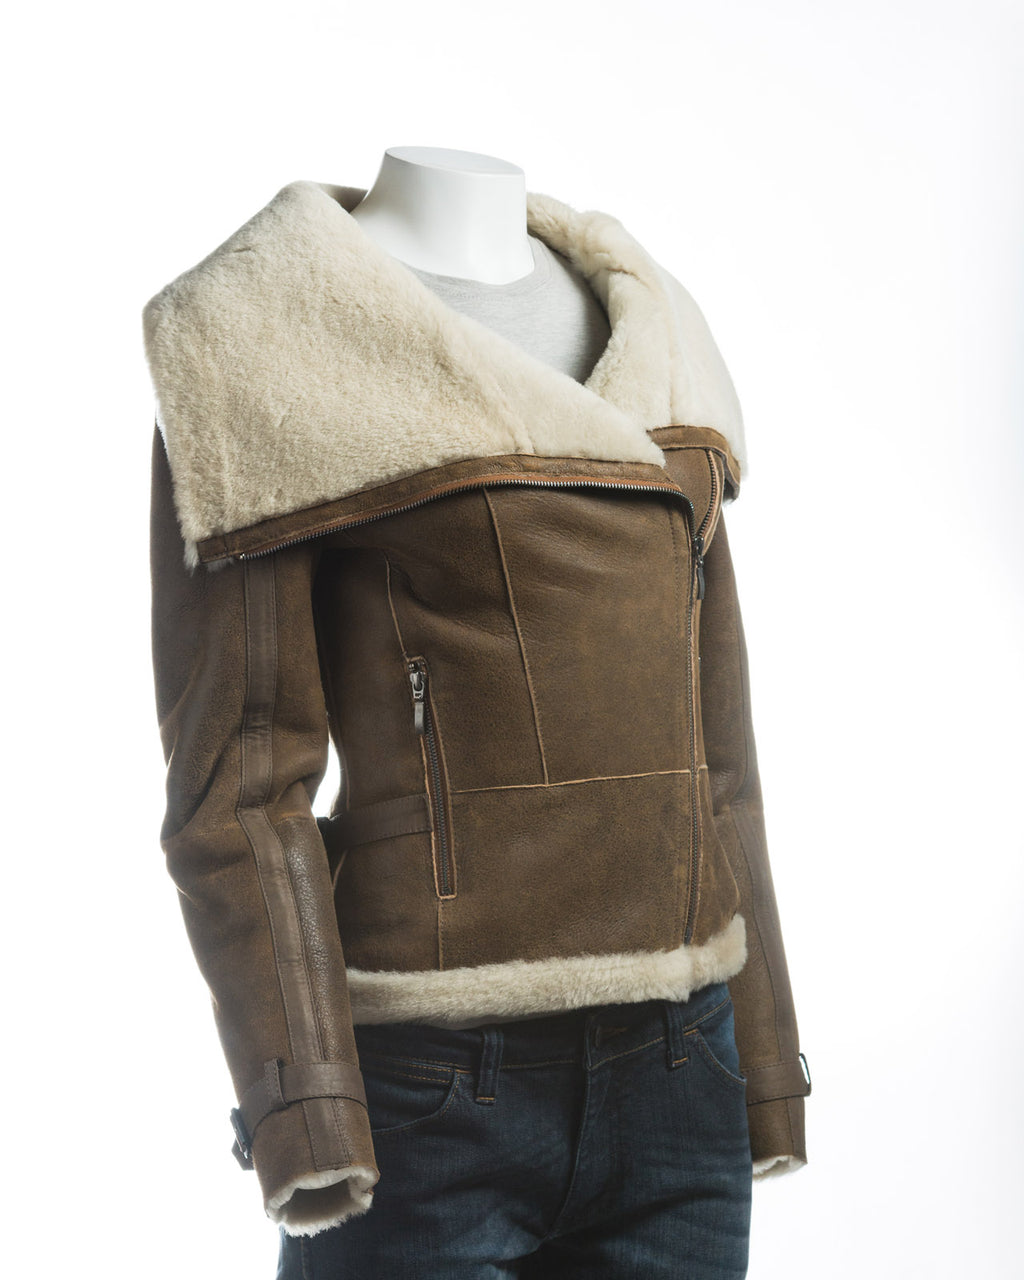 Ladies Antique Tan Sheepskin Jacket With Oversized Collar: Rita